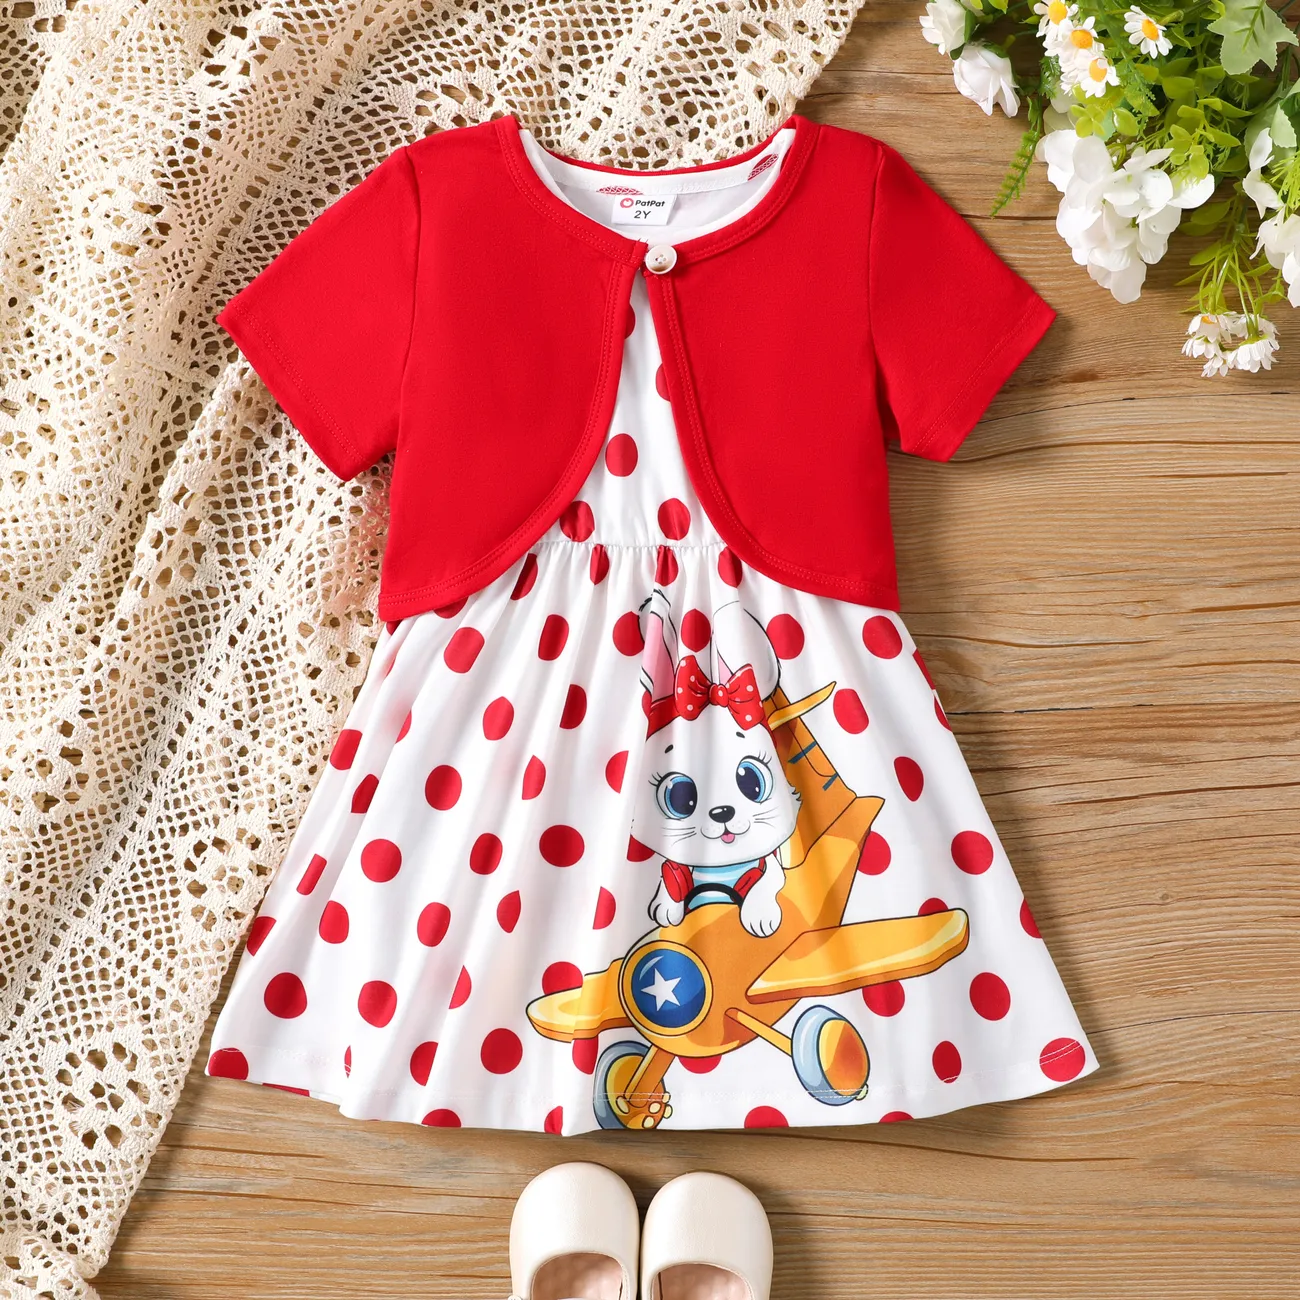 3件 小童 女 鈕扣 童趣 兔仔 套裝裙 紅色 big image 1